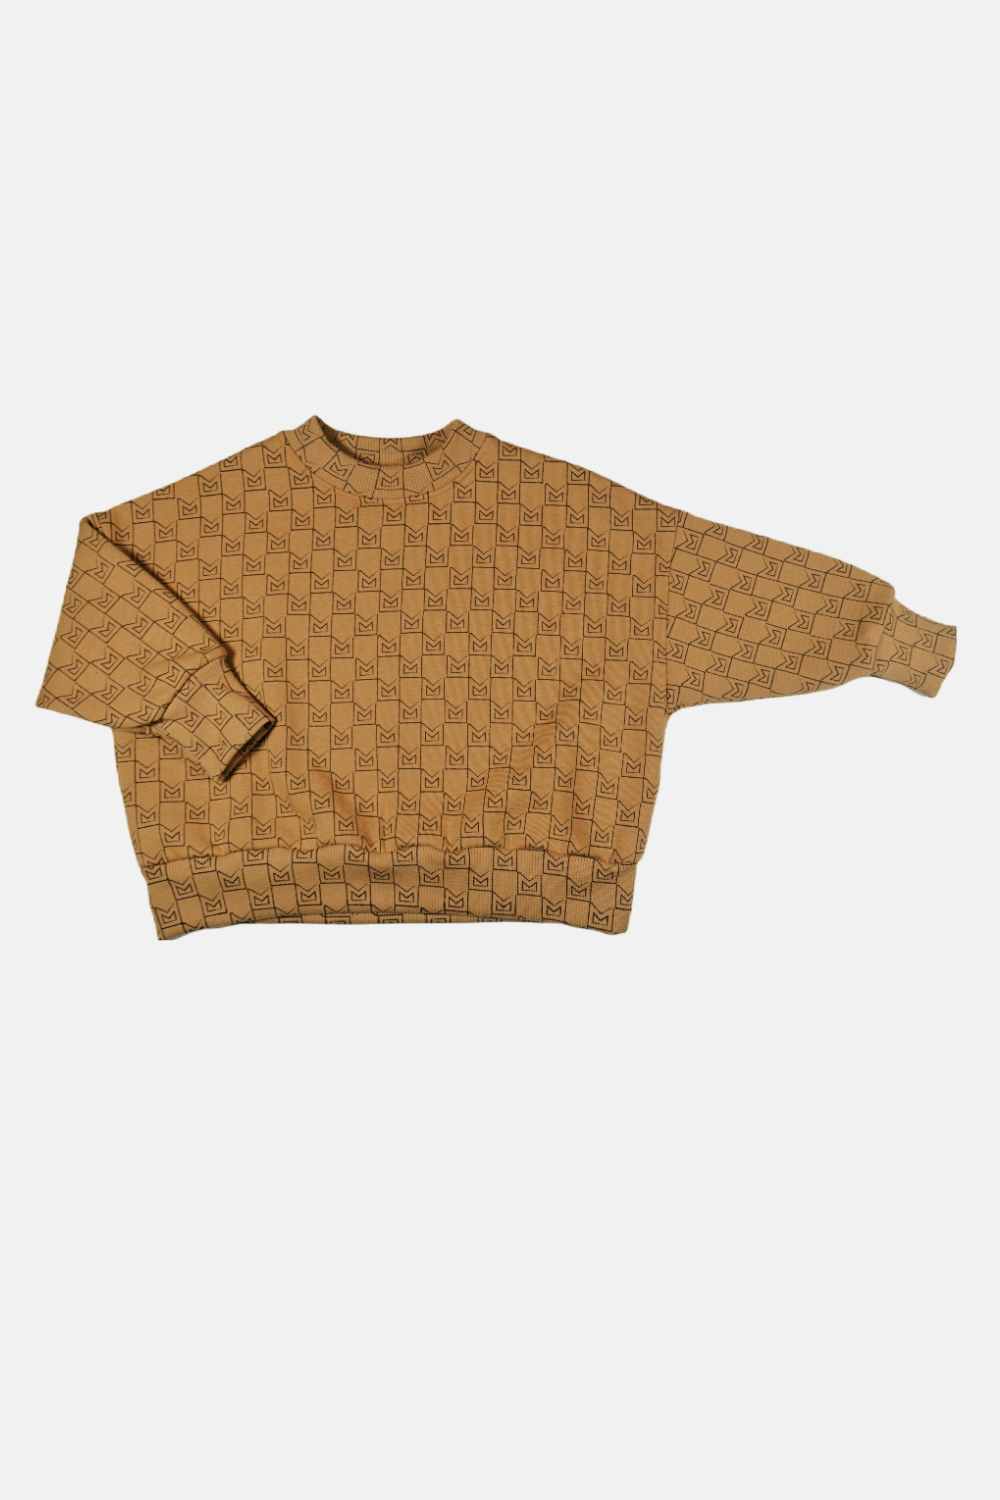 Monogram toffee sweatshirt by Minikid– Flying Colors